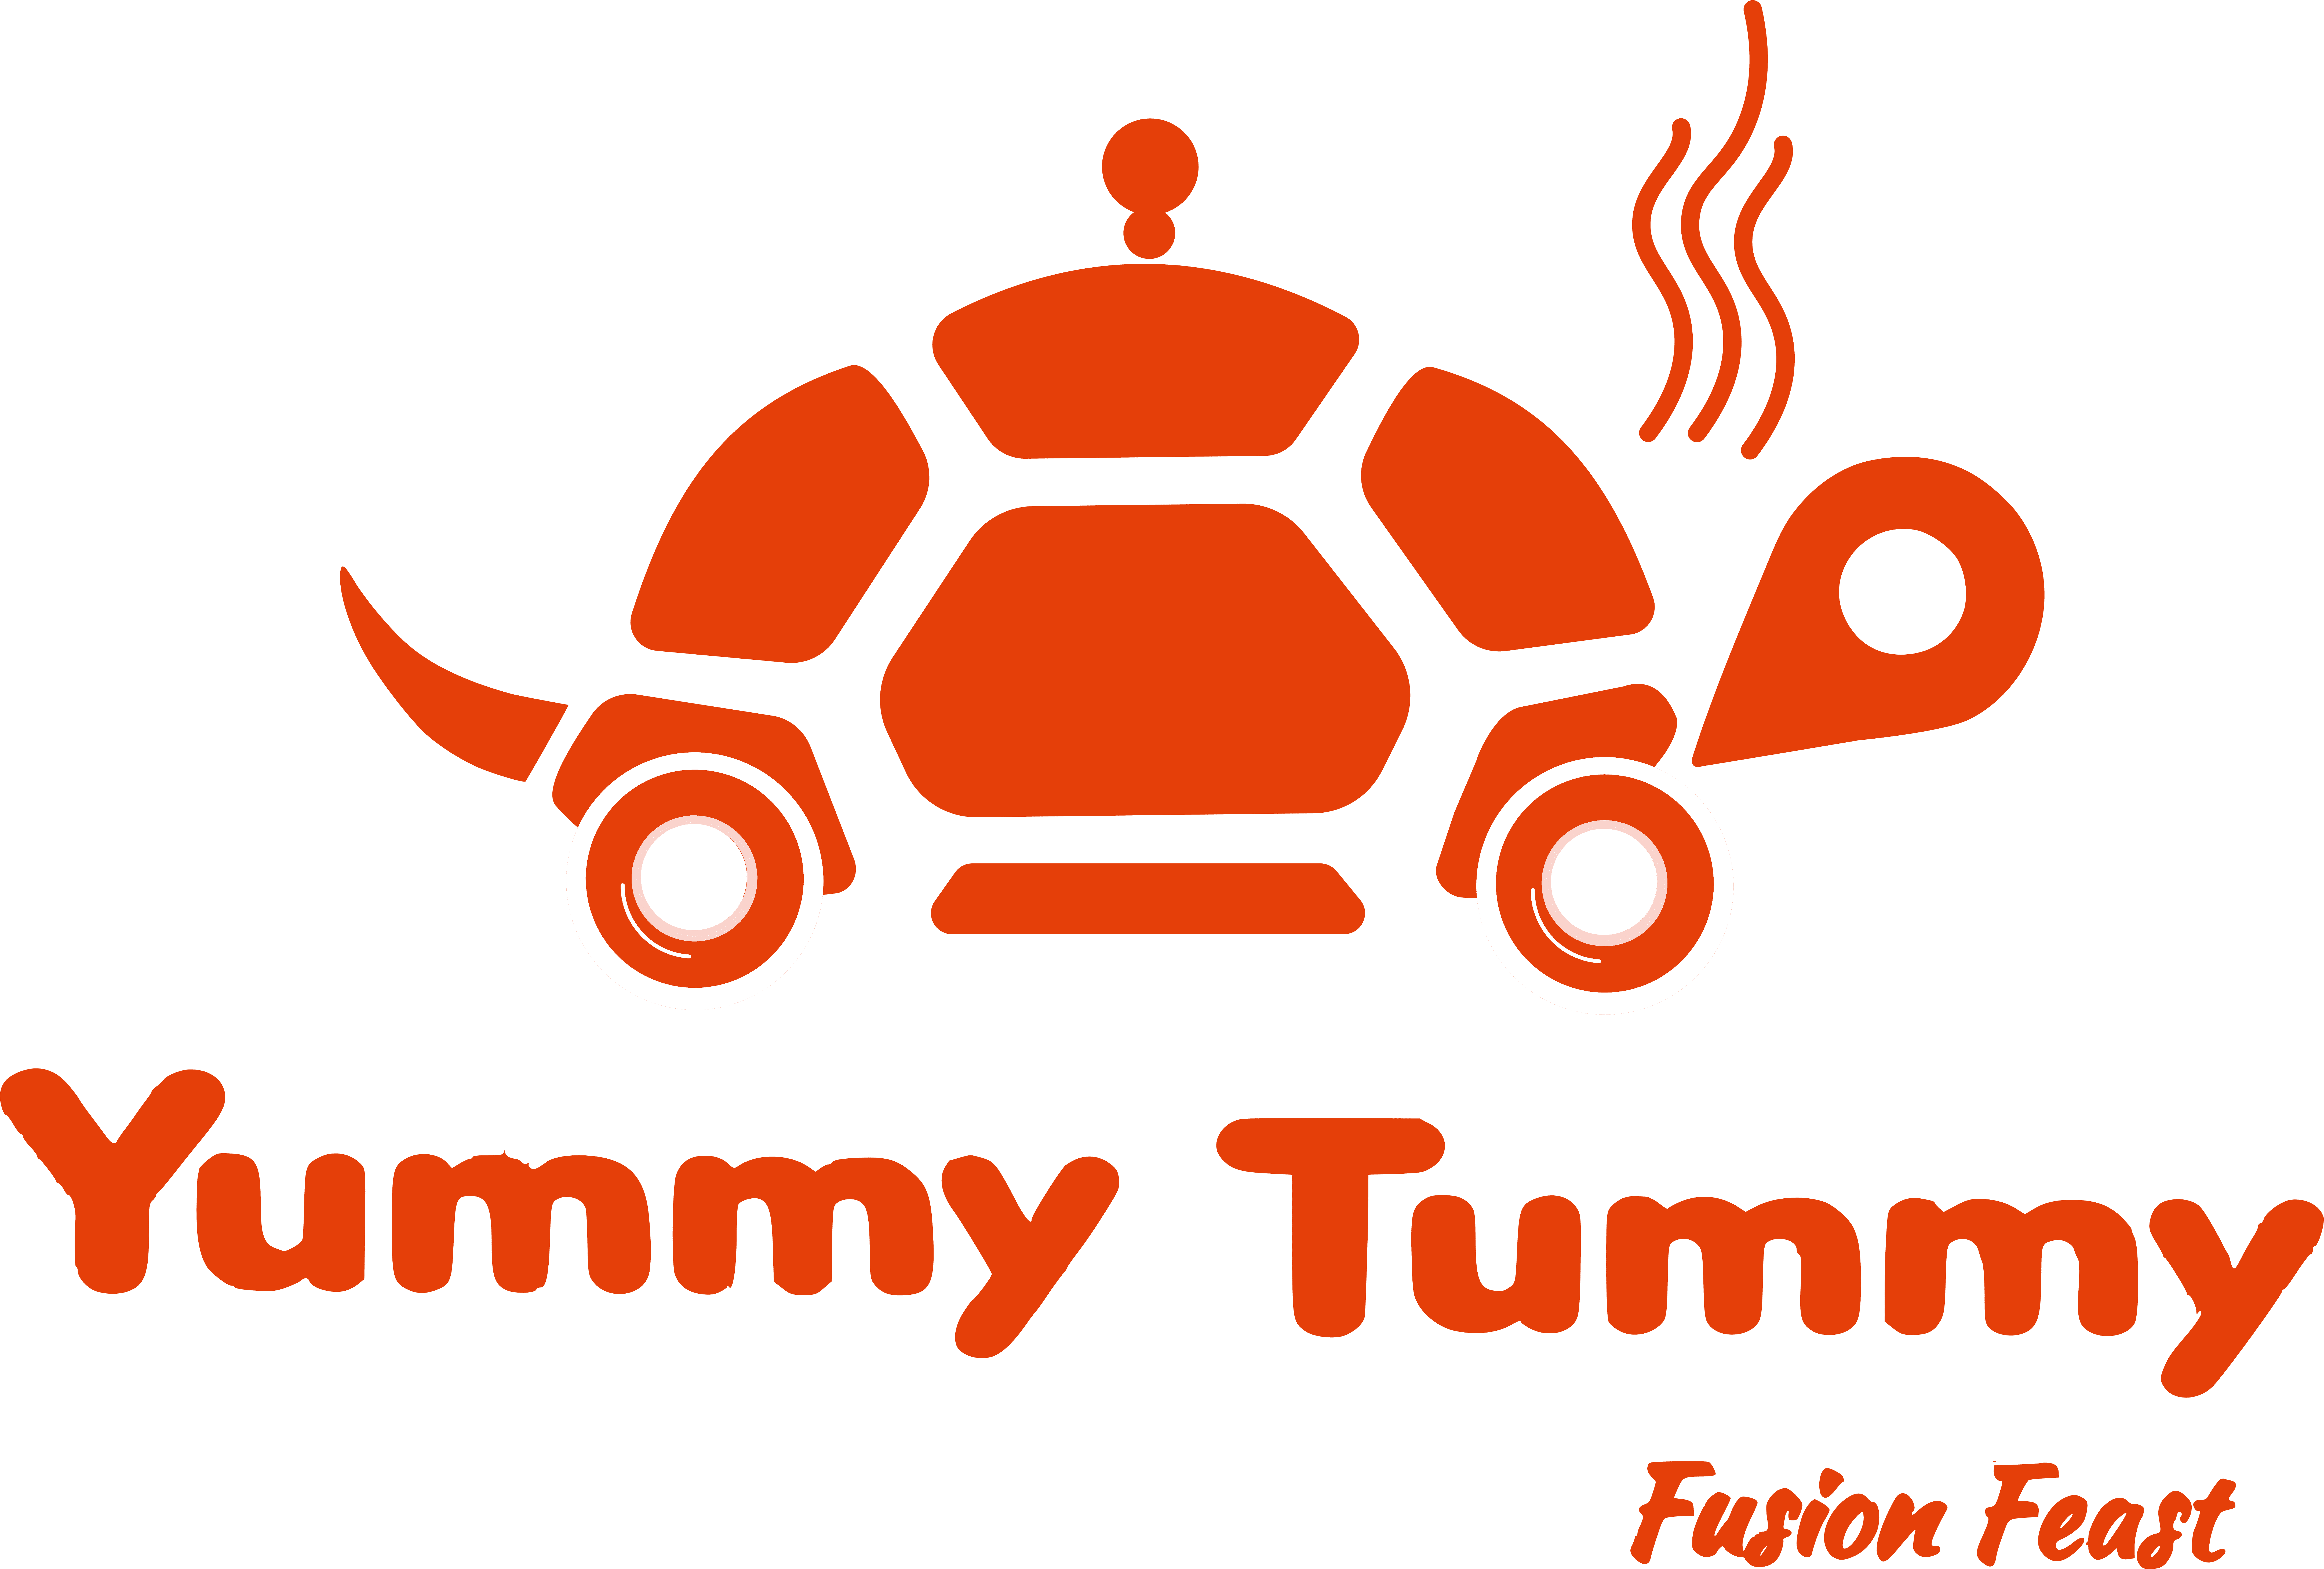 Yummy Tummy Fusion Feast